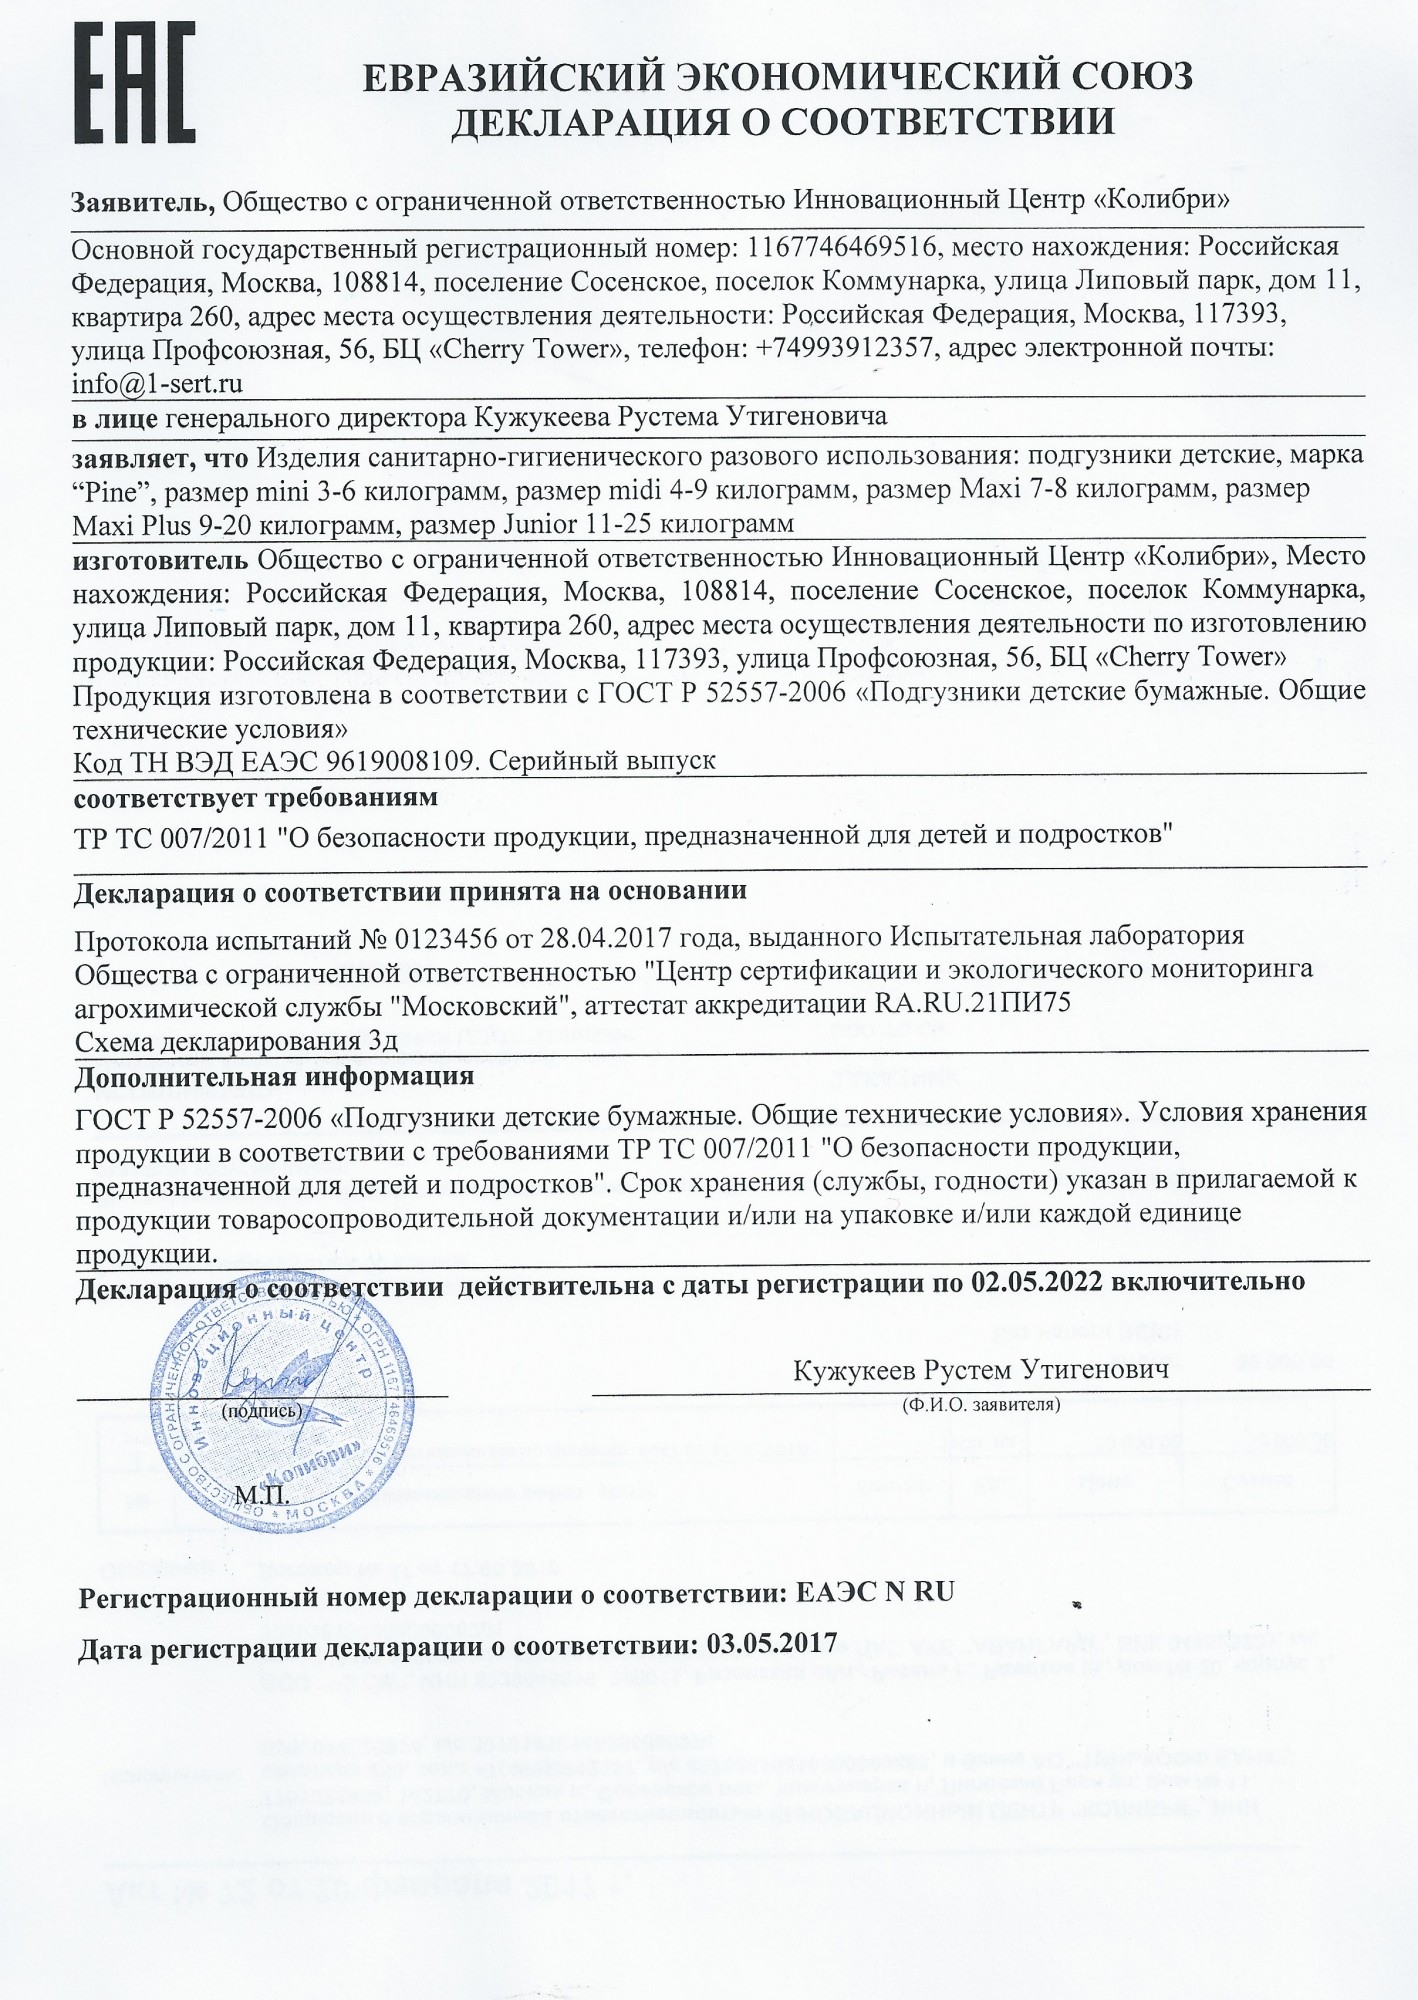 Сертификат соответствия требованиям тр ТС 018/2011